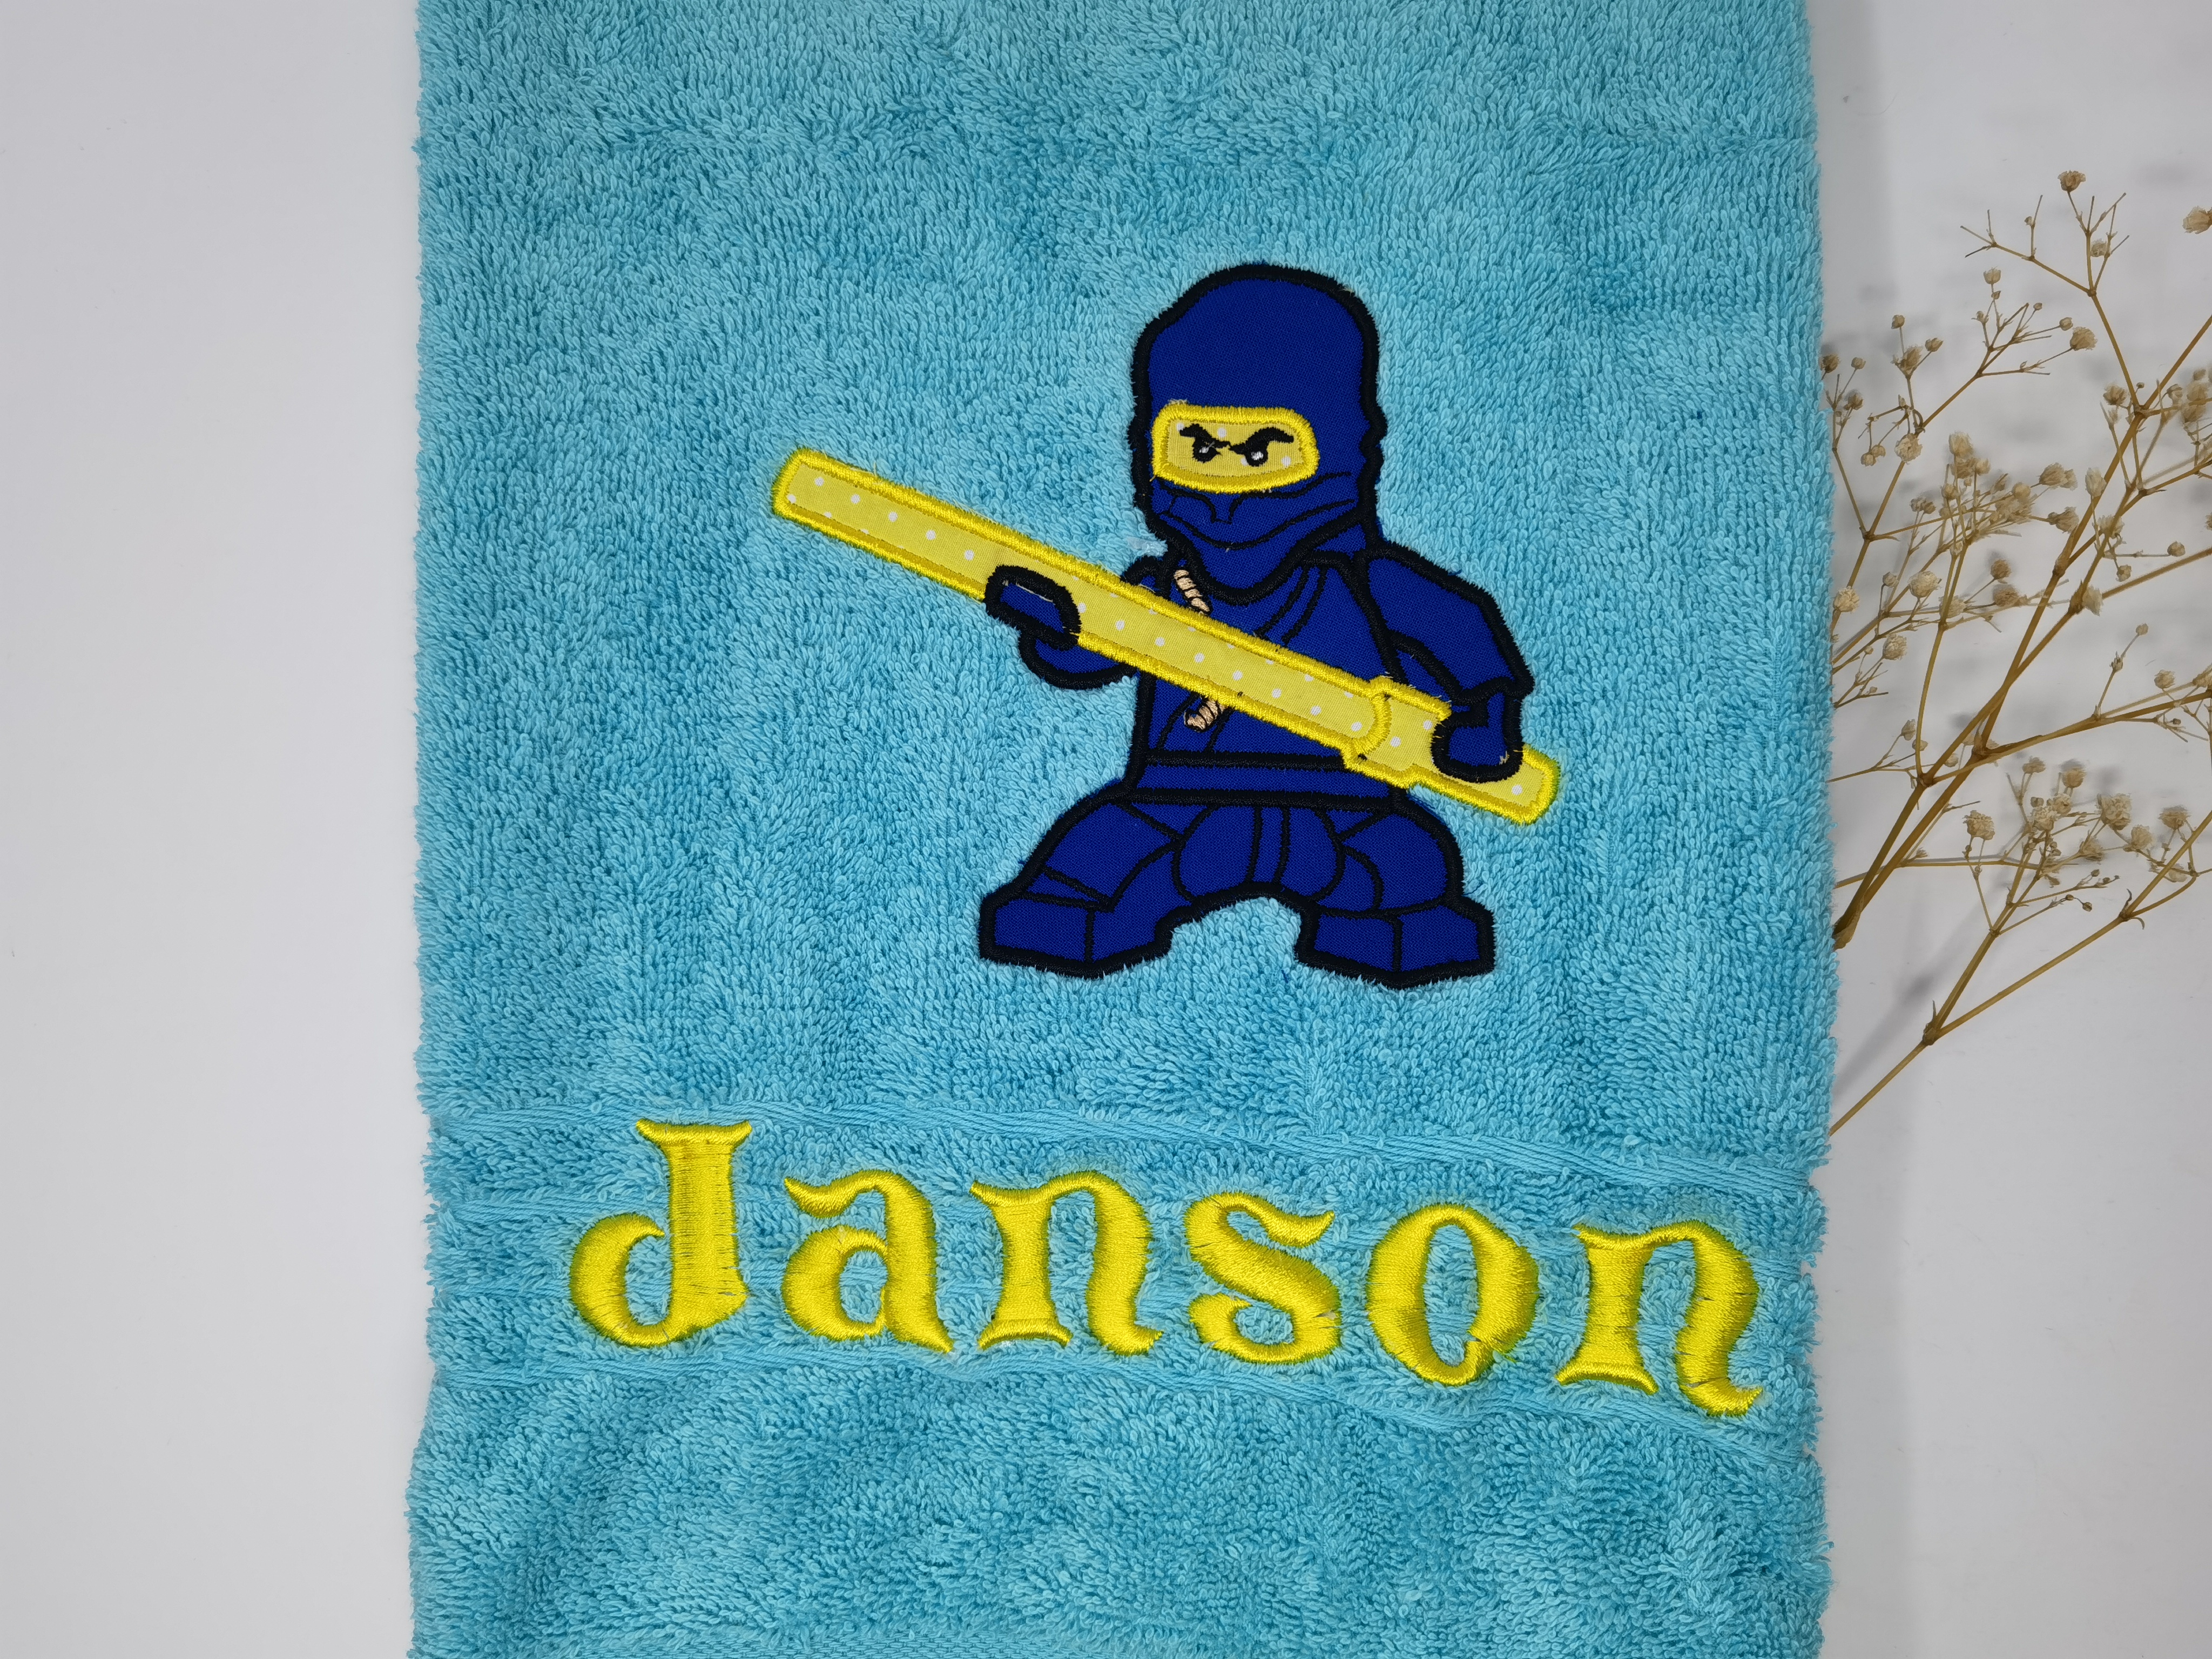 NINJA Blau Handtuch Duschtuch bestickt & personalisierbar Super Qualität